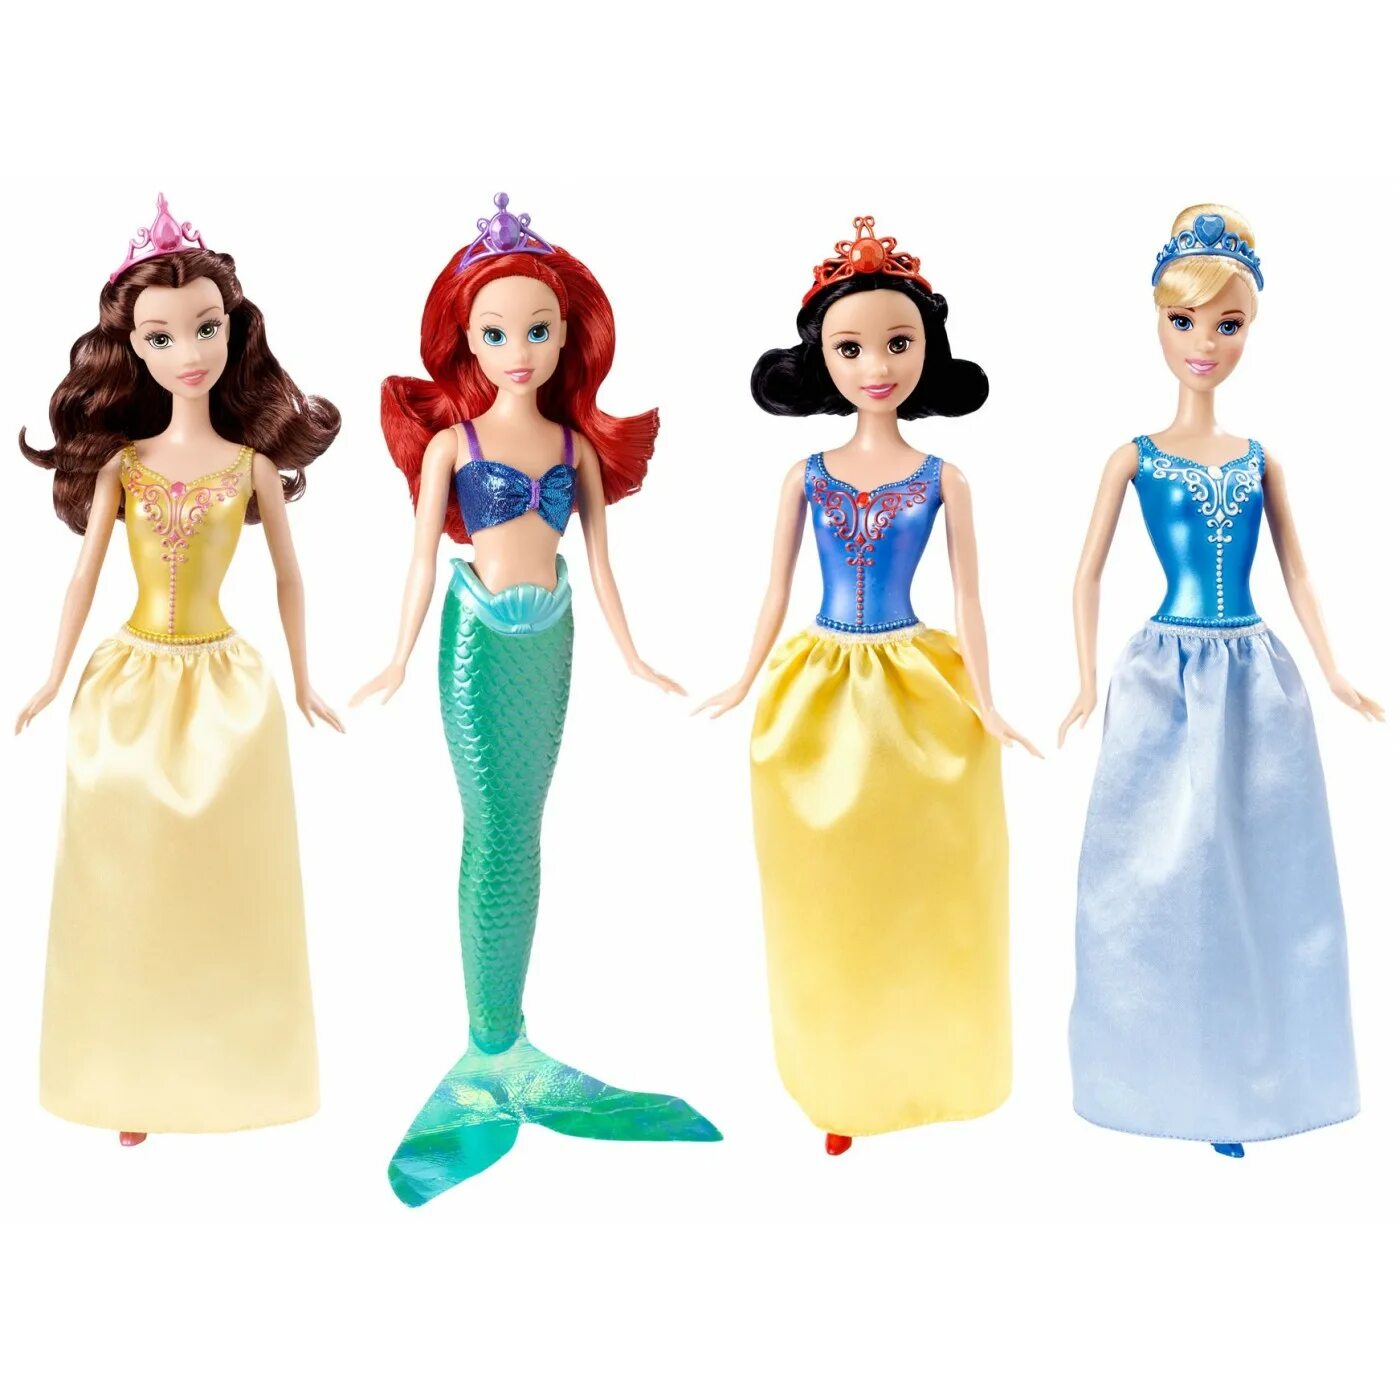 Цена диснея. Куклы принцессы Дисней Мателл. Кукла Mattel Disney Princess Ариэль, 29 см, bdj28. Disney куклы "принцессы - модницы". Кукла bdj10(bdj15/16) принцесса Disney в ассорт (Золушка/Мерида) Disney Princess.